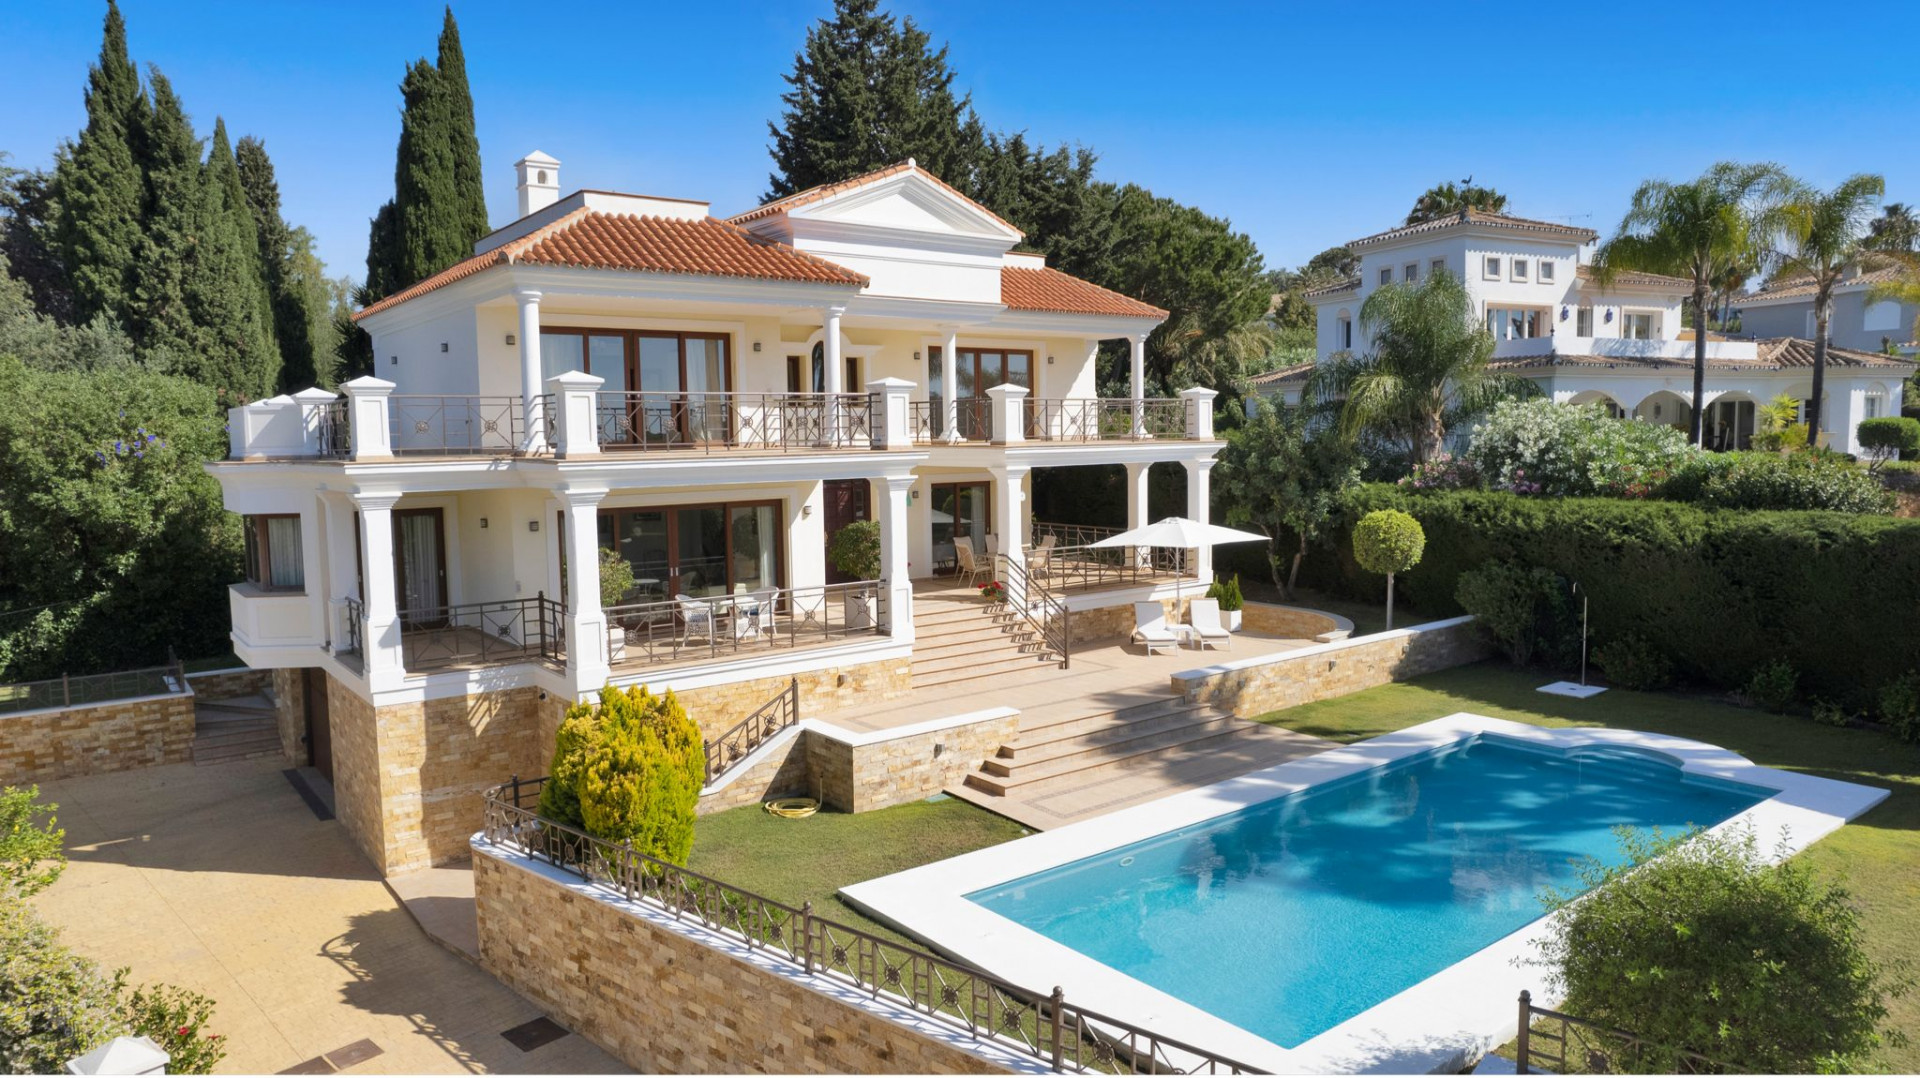 Magnificent five bedroom Villa located in Hacienda Las Chapas, Marbella - wit...